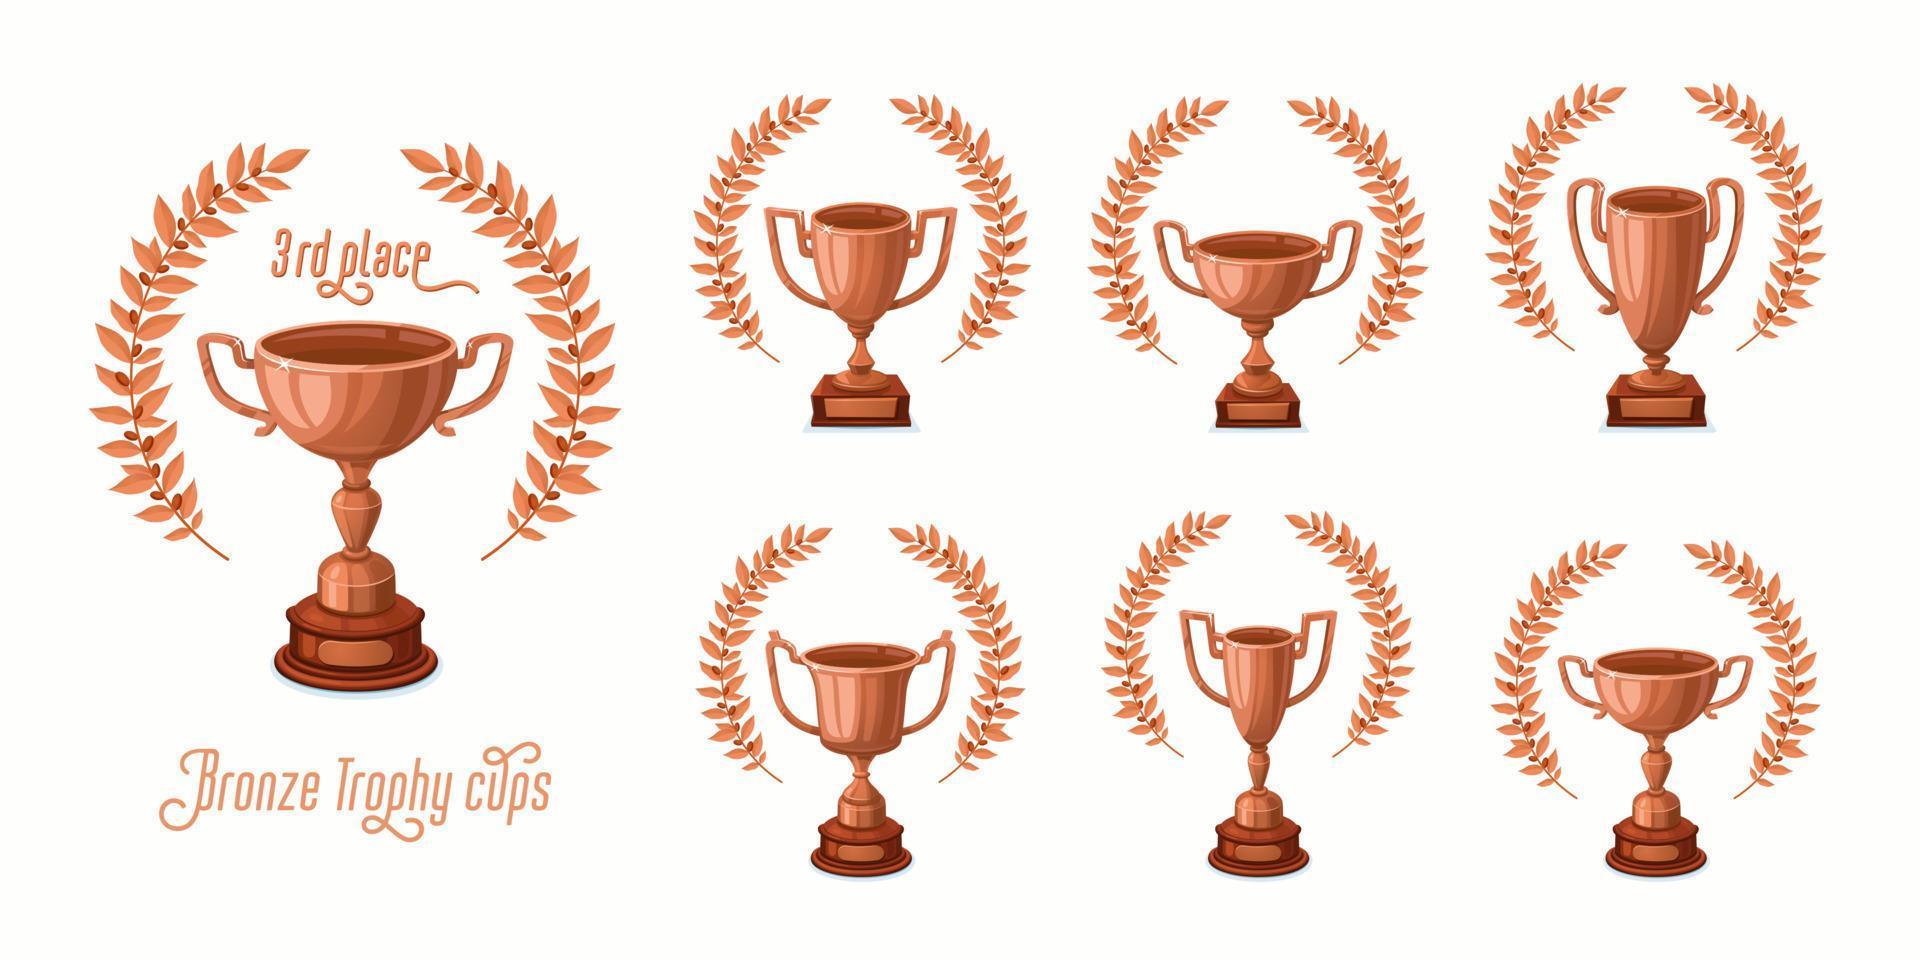 taças de troféu de bronze com coroas de louros. copos de prêmio de troféu com formas diferentes - troféus de vencedor do 3º lugar. ilustração em vetor estilo dos desenhos animados.